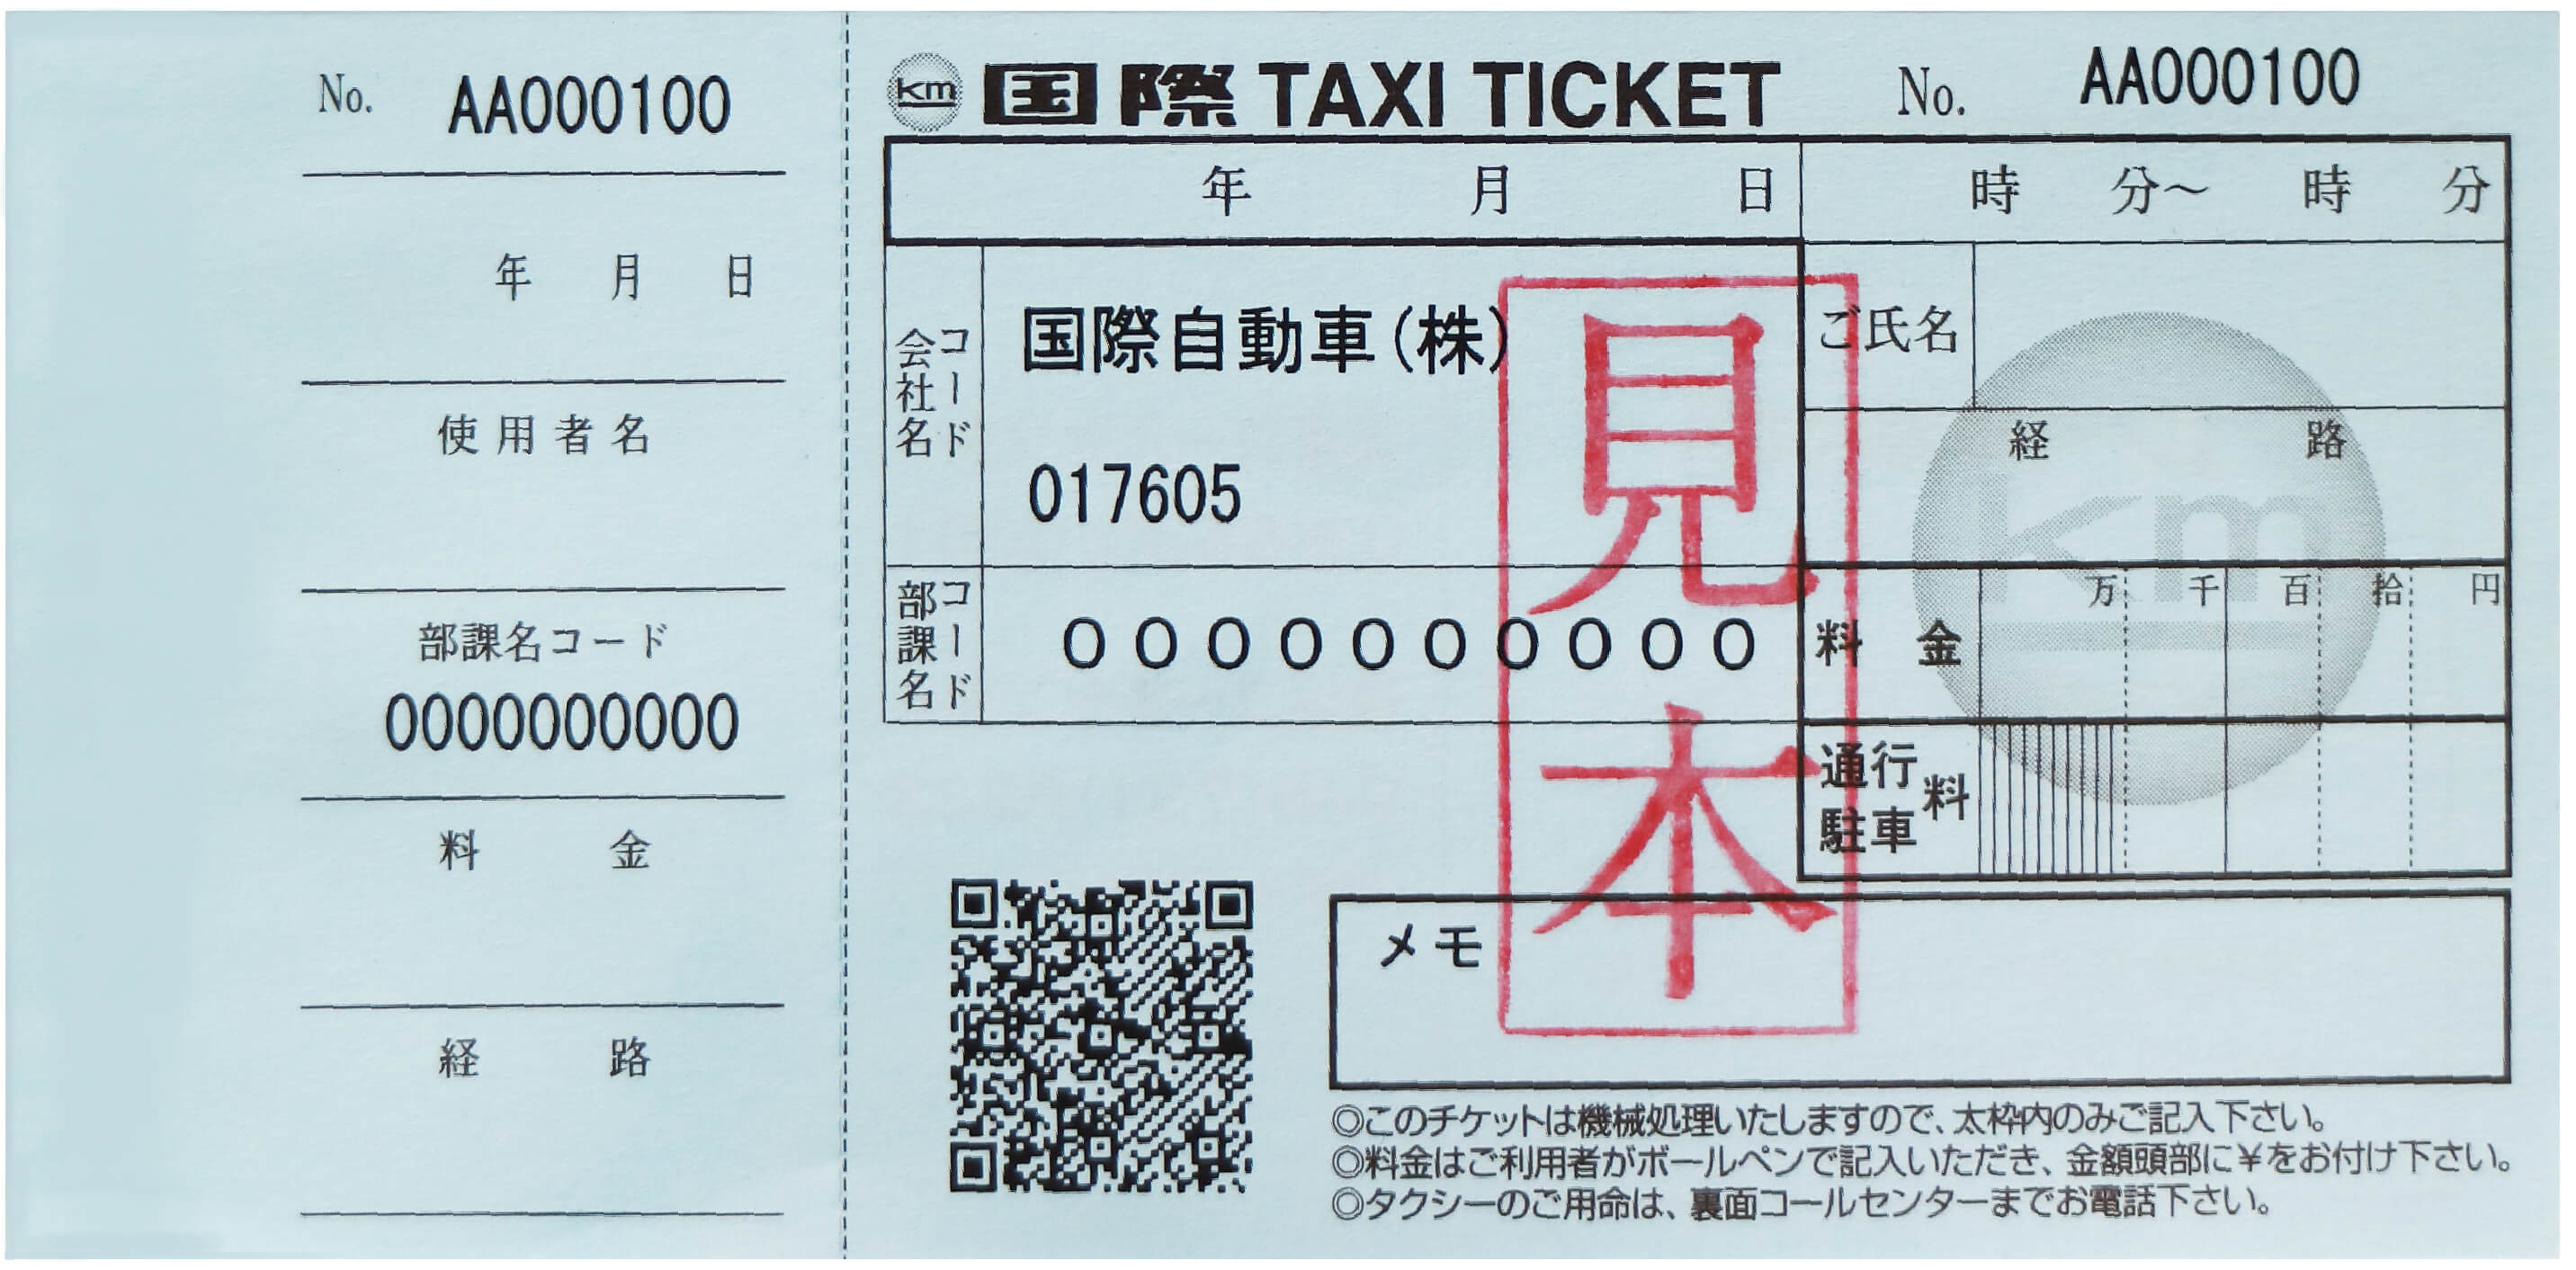 タクシーチケットとは 法人利用 使い方 Kmタクシーの国際自動車